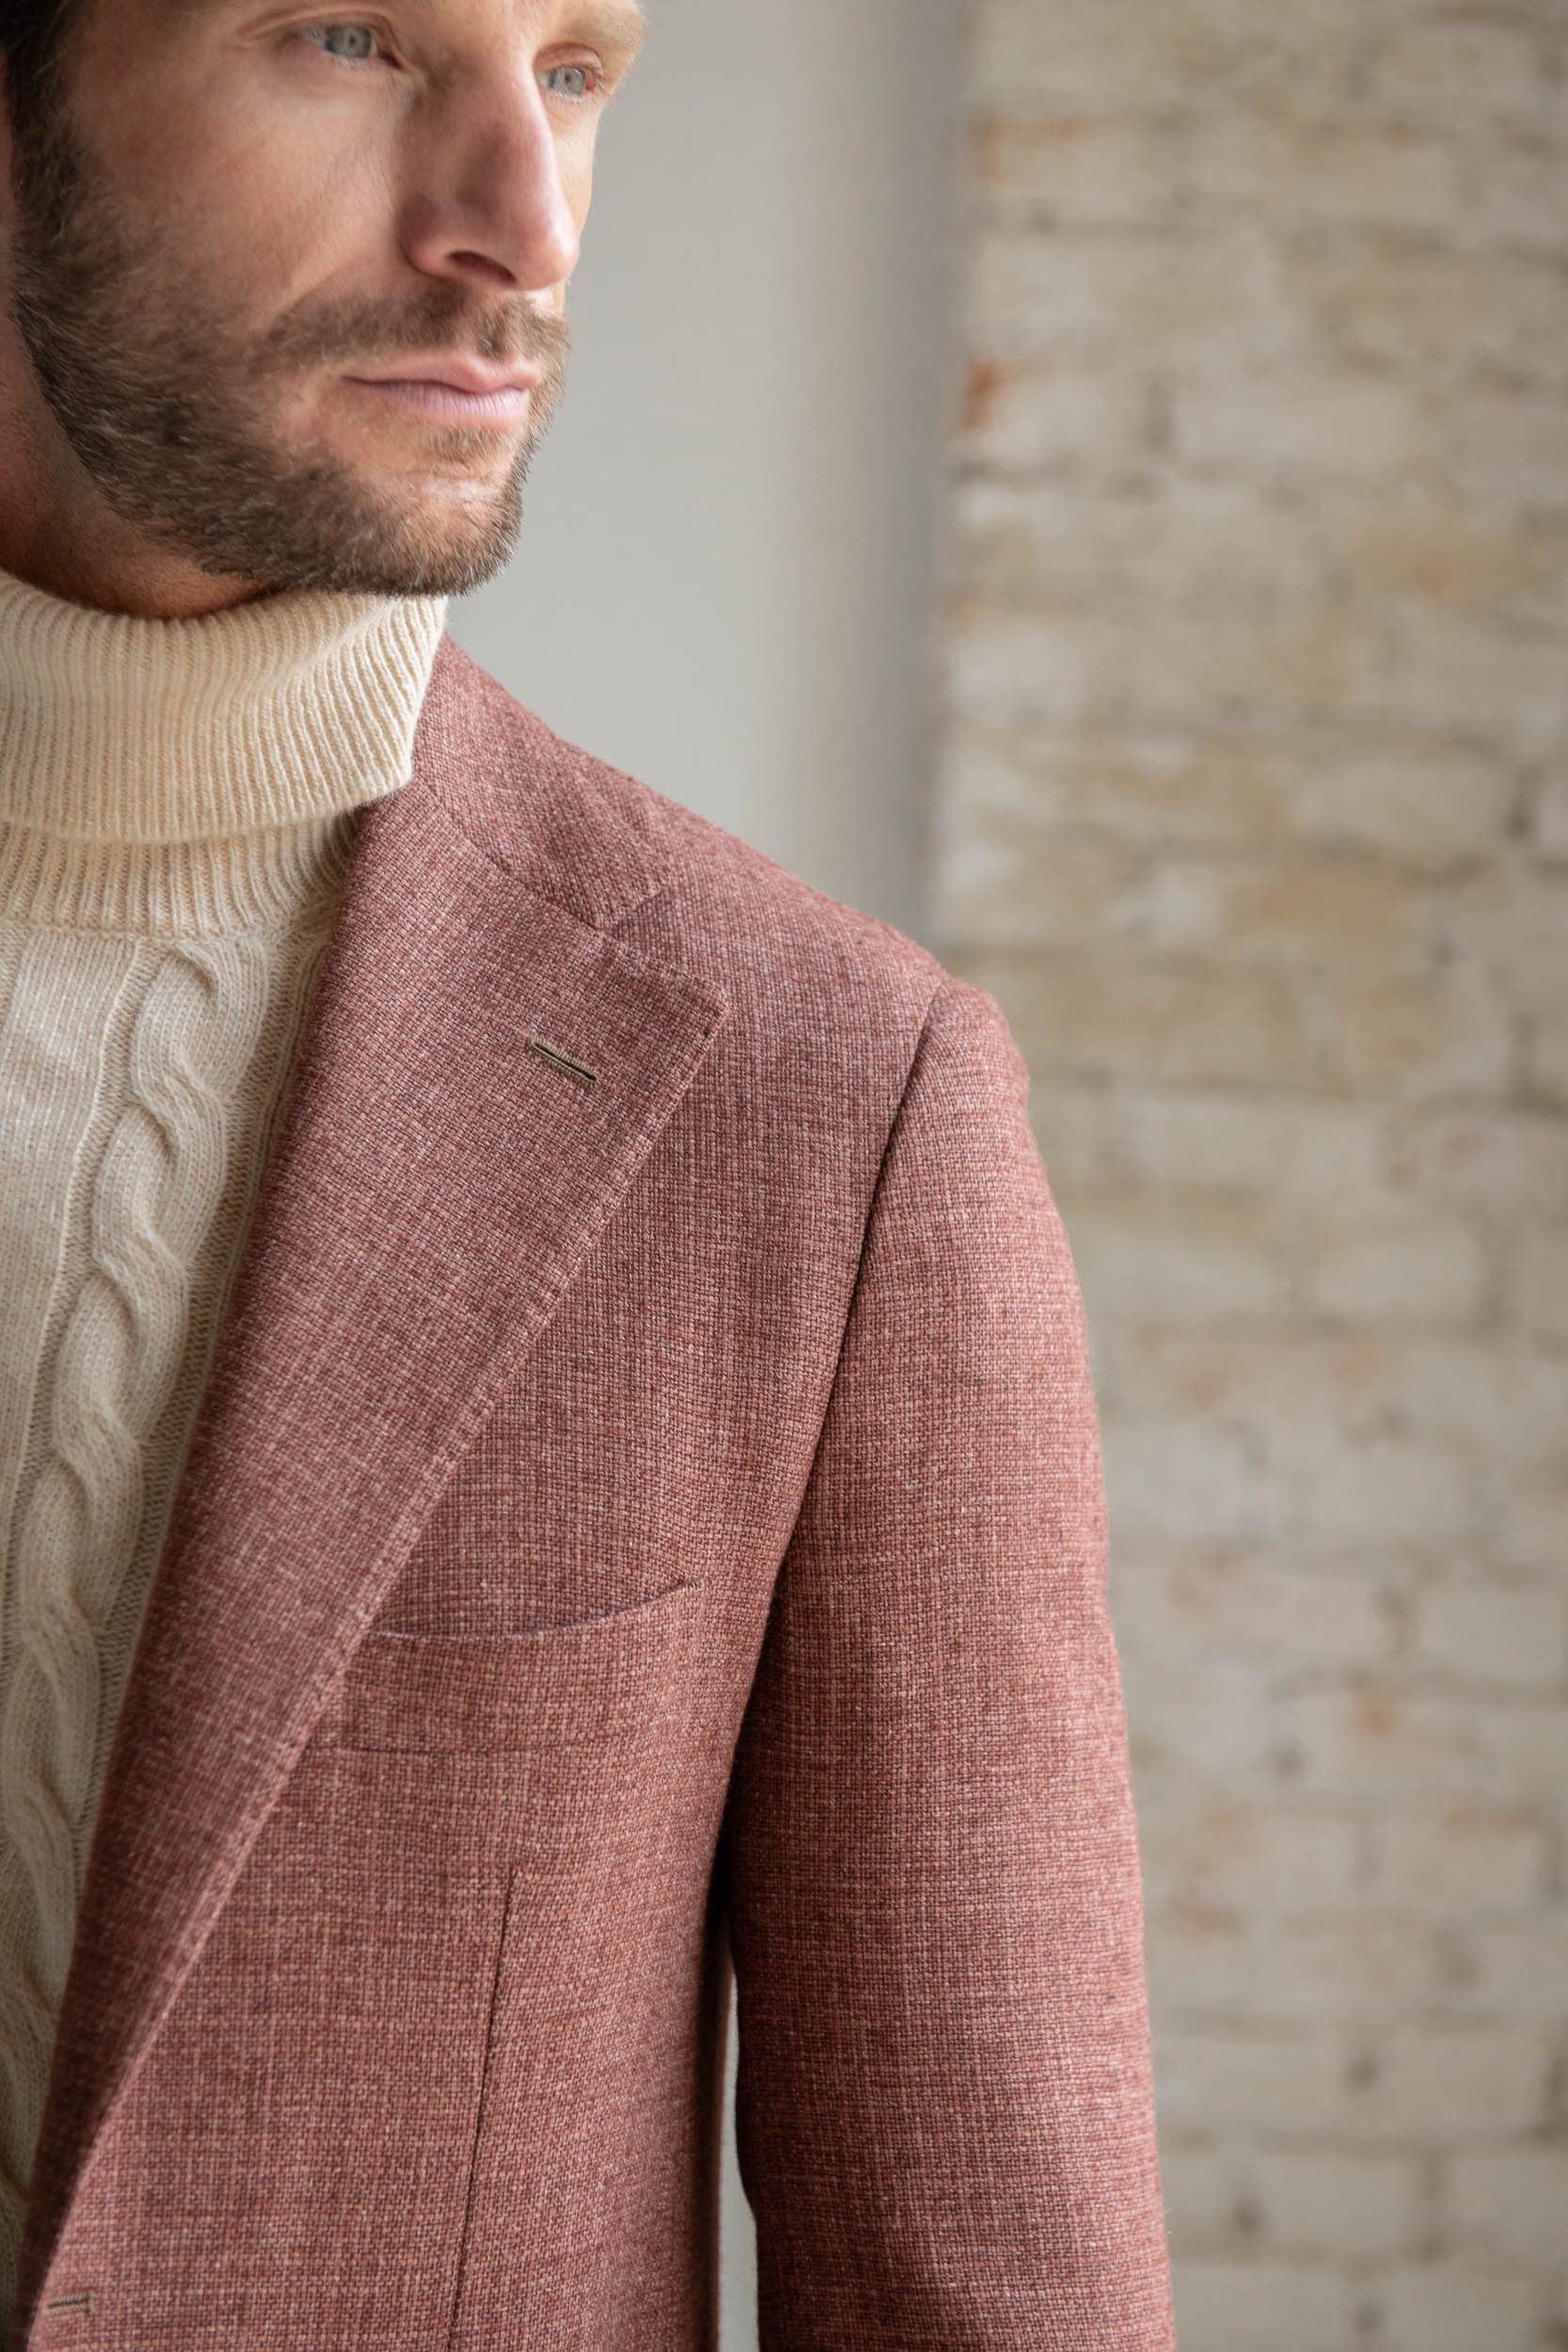 Giacca mattone in lana, cotone e seta - Made in Italy